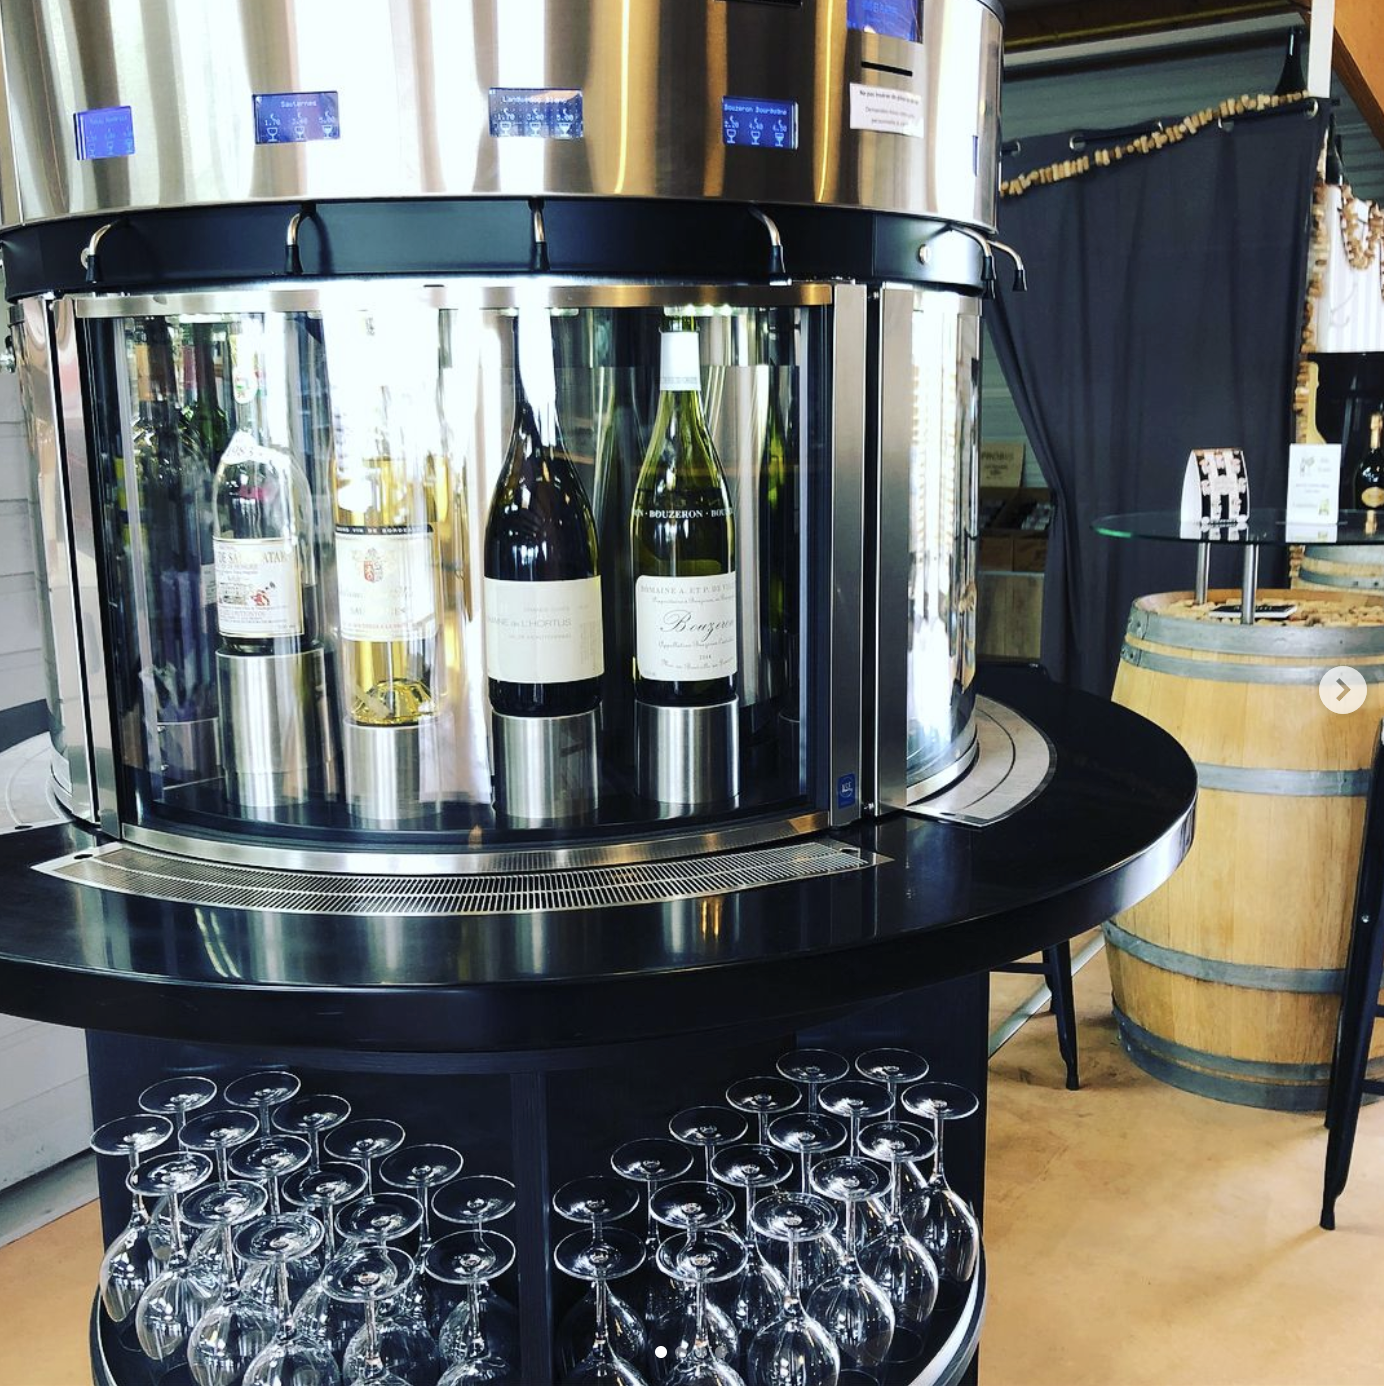 Distributeurs de vin au verre enomatic vendus par Enostore France au magasin de vins et spiritueux Vins et plaisirs à Niort